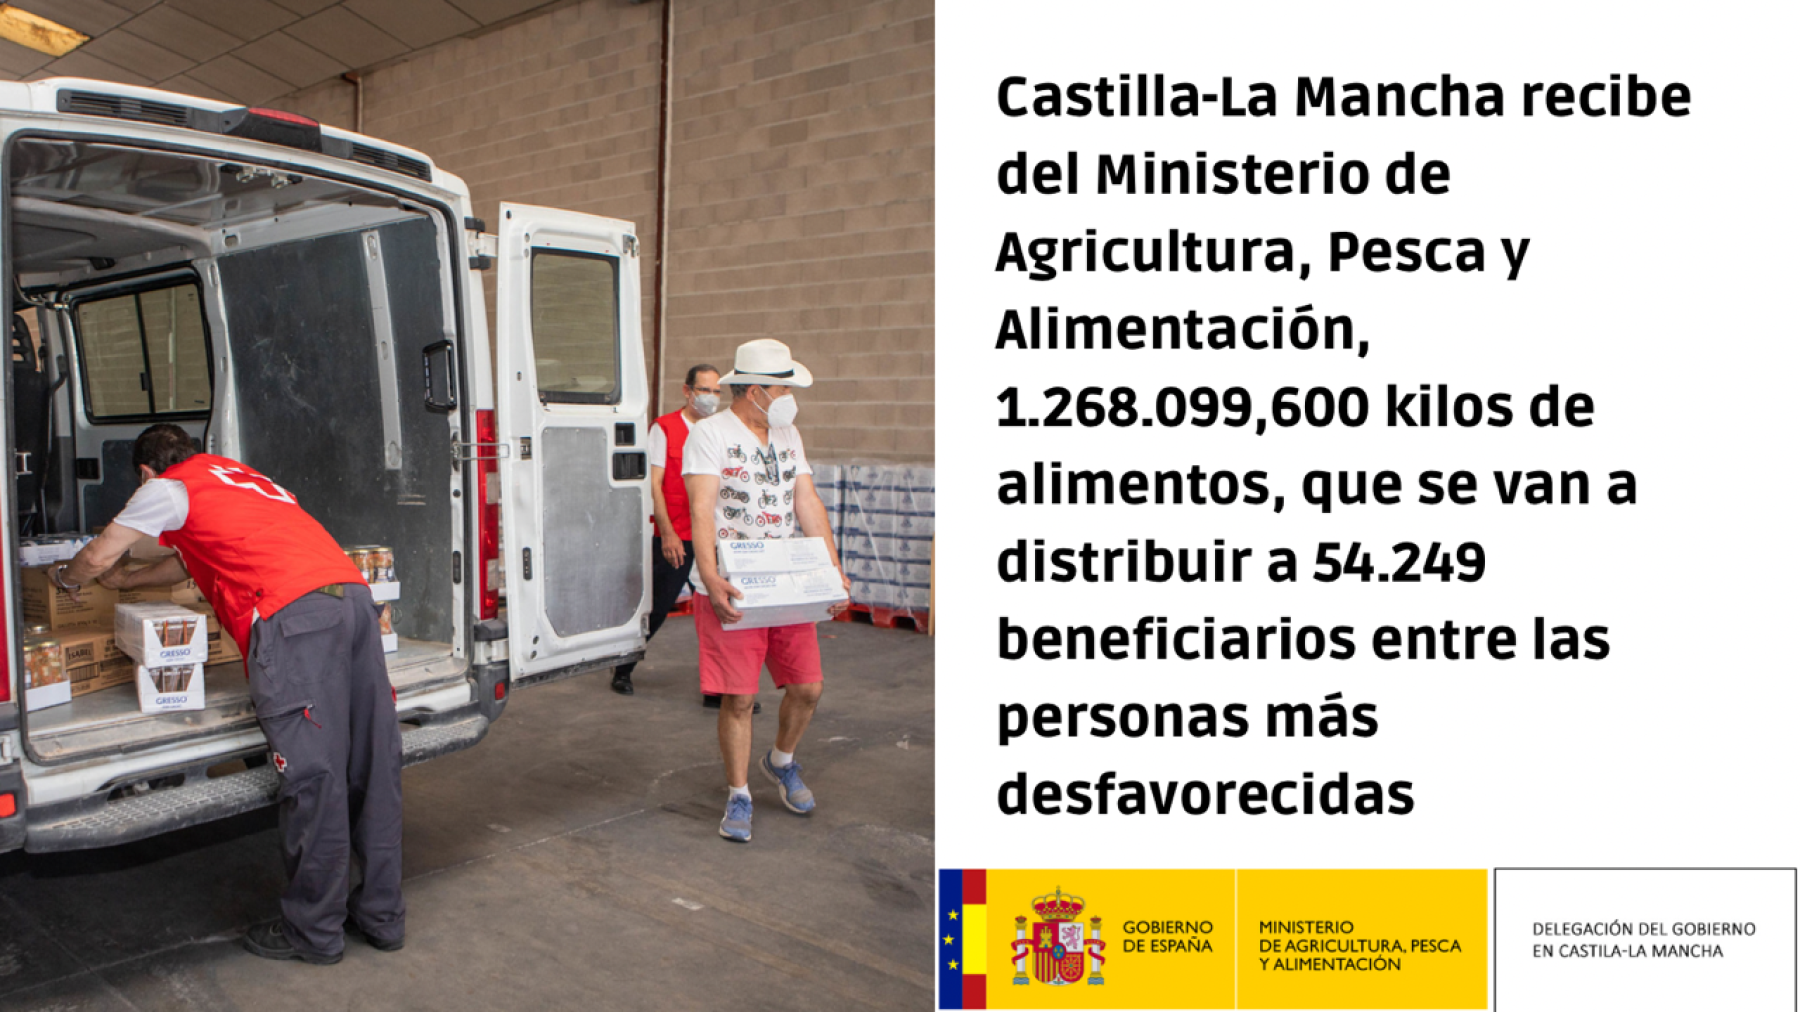 Castilla-La Mancha recibe del Ministerio de Agricultura, Pesca y Alimentación, 1.268.099,600 kilos de alimentos, que se van a distribuir a 54.249 beneficiarios entre las personas más desfavorecidas